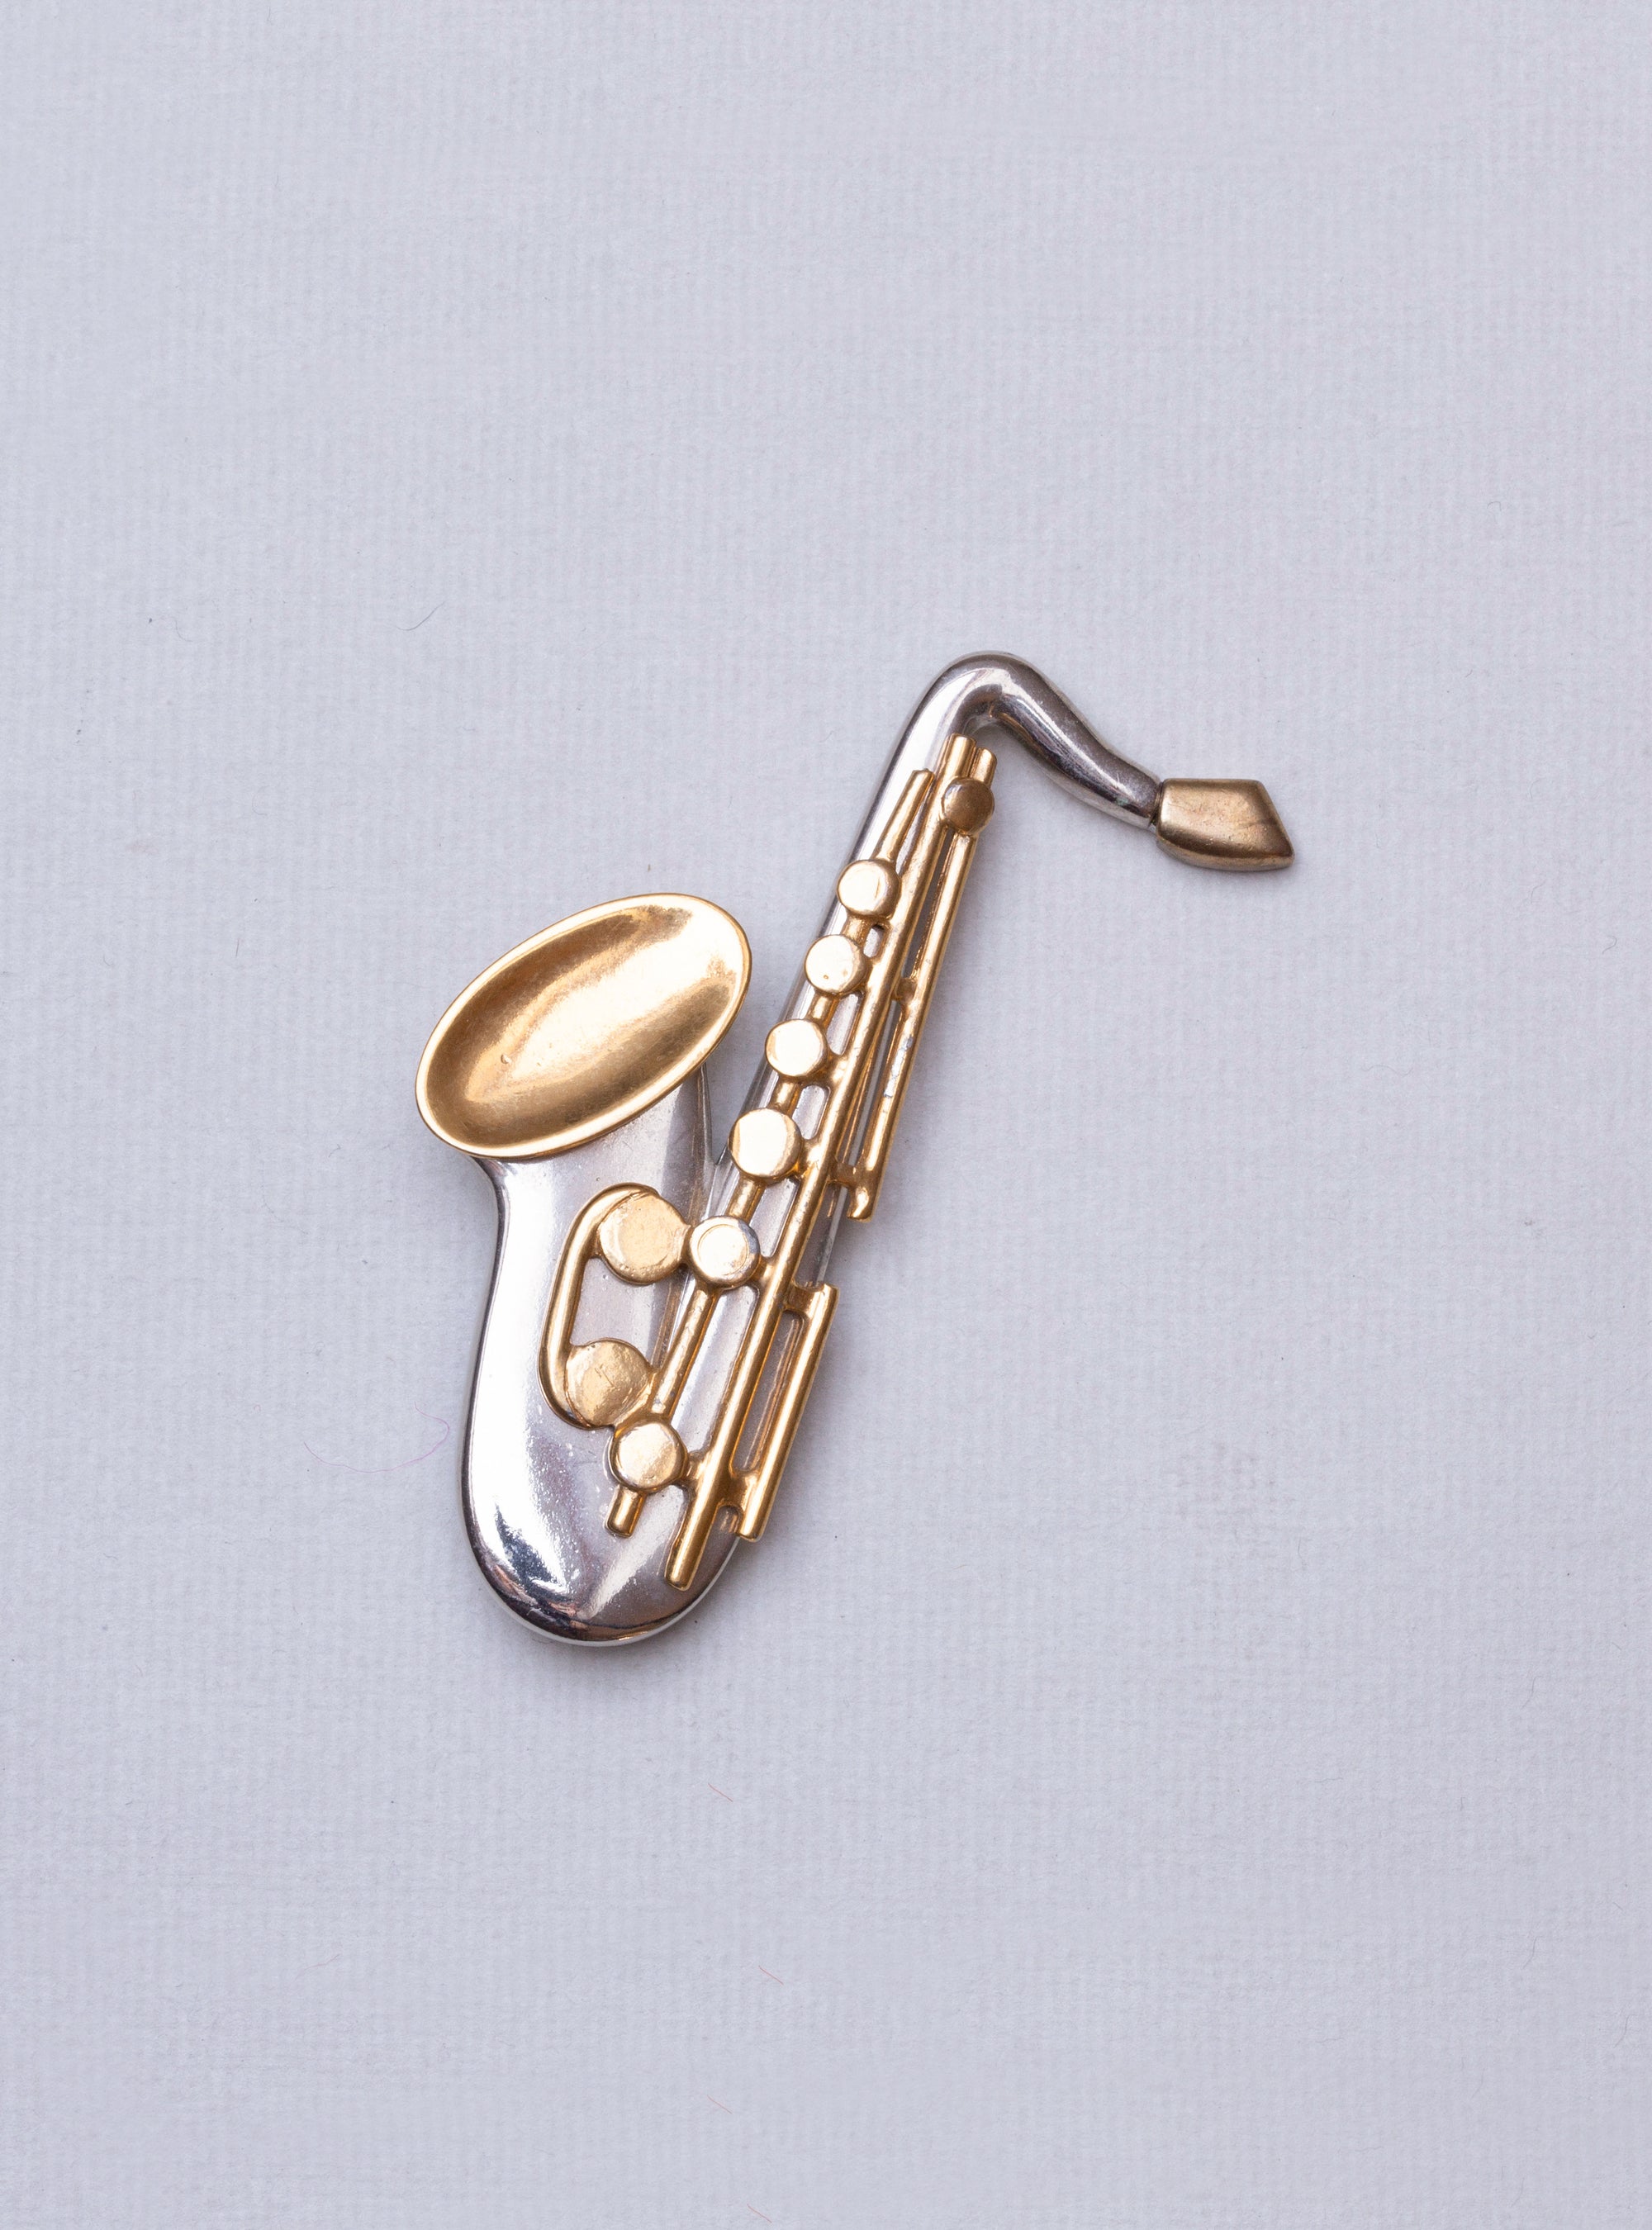 Vintage Saxophone Brooch